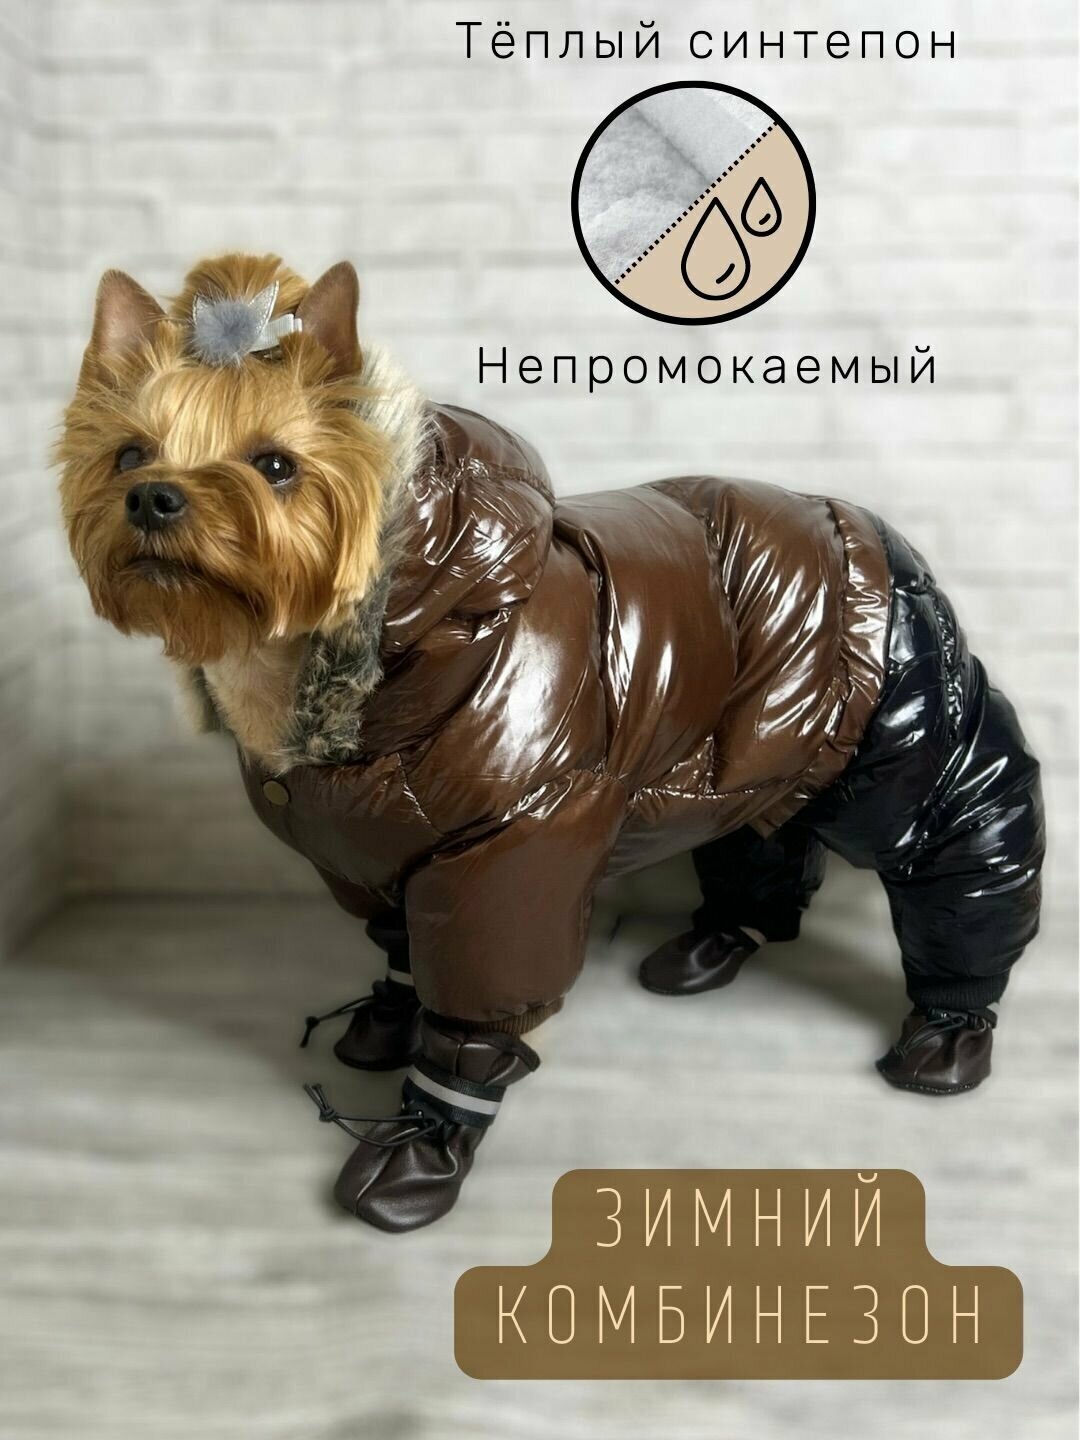 Зимний комбинезон для собак всех пород / Непромокаемый / Плотный синтепон / Размер 10 / Коричневый